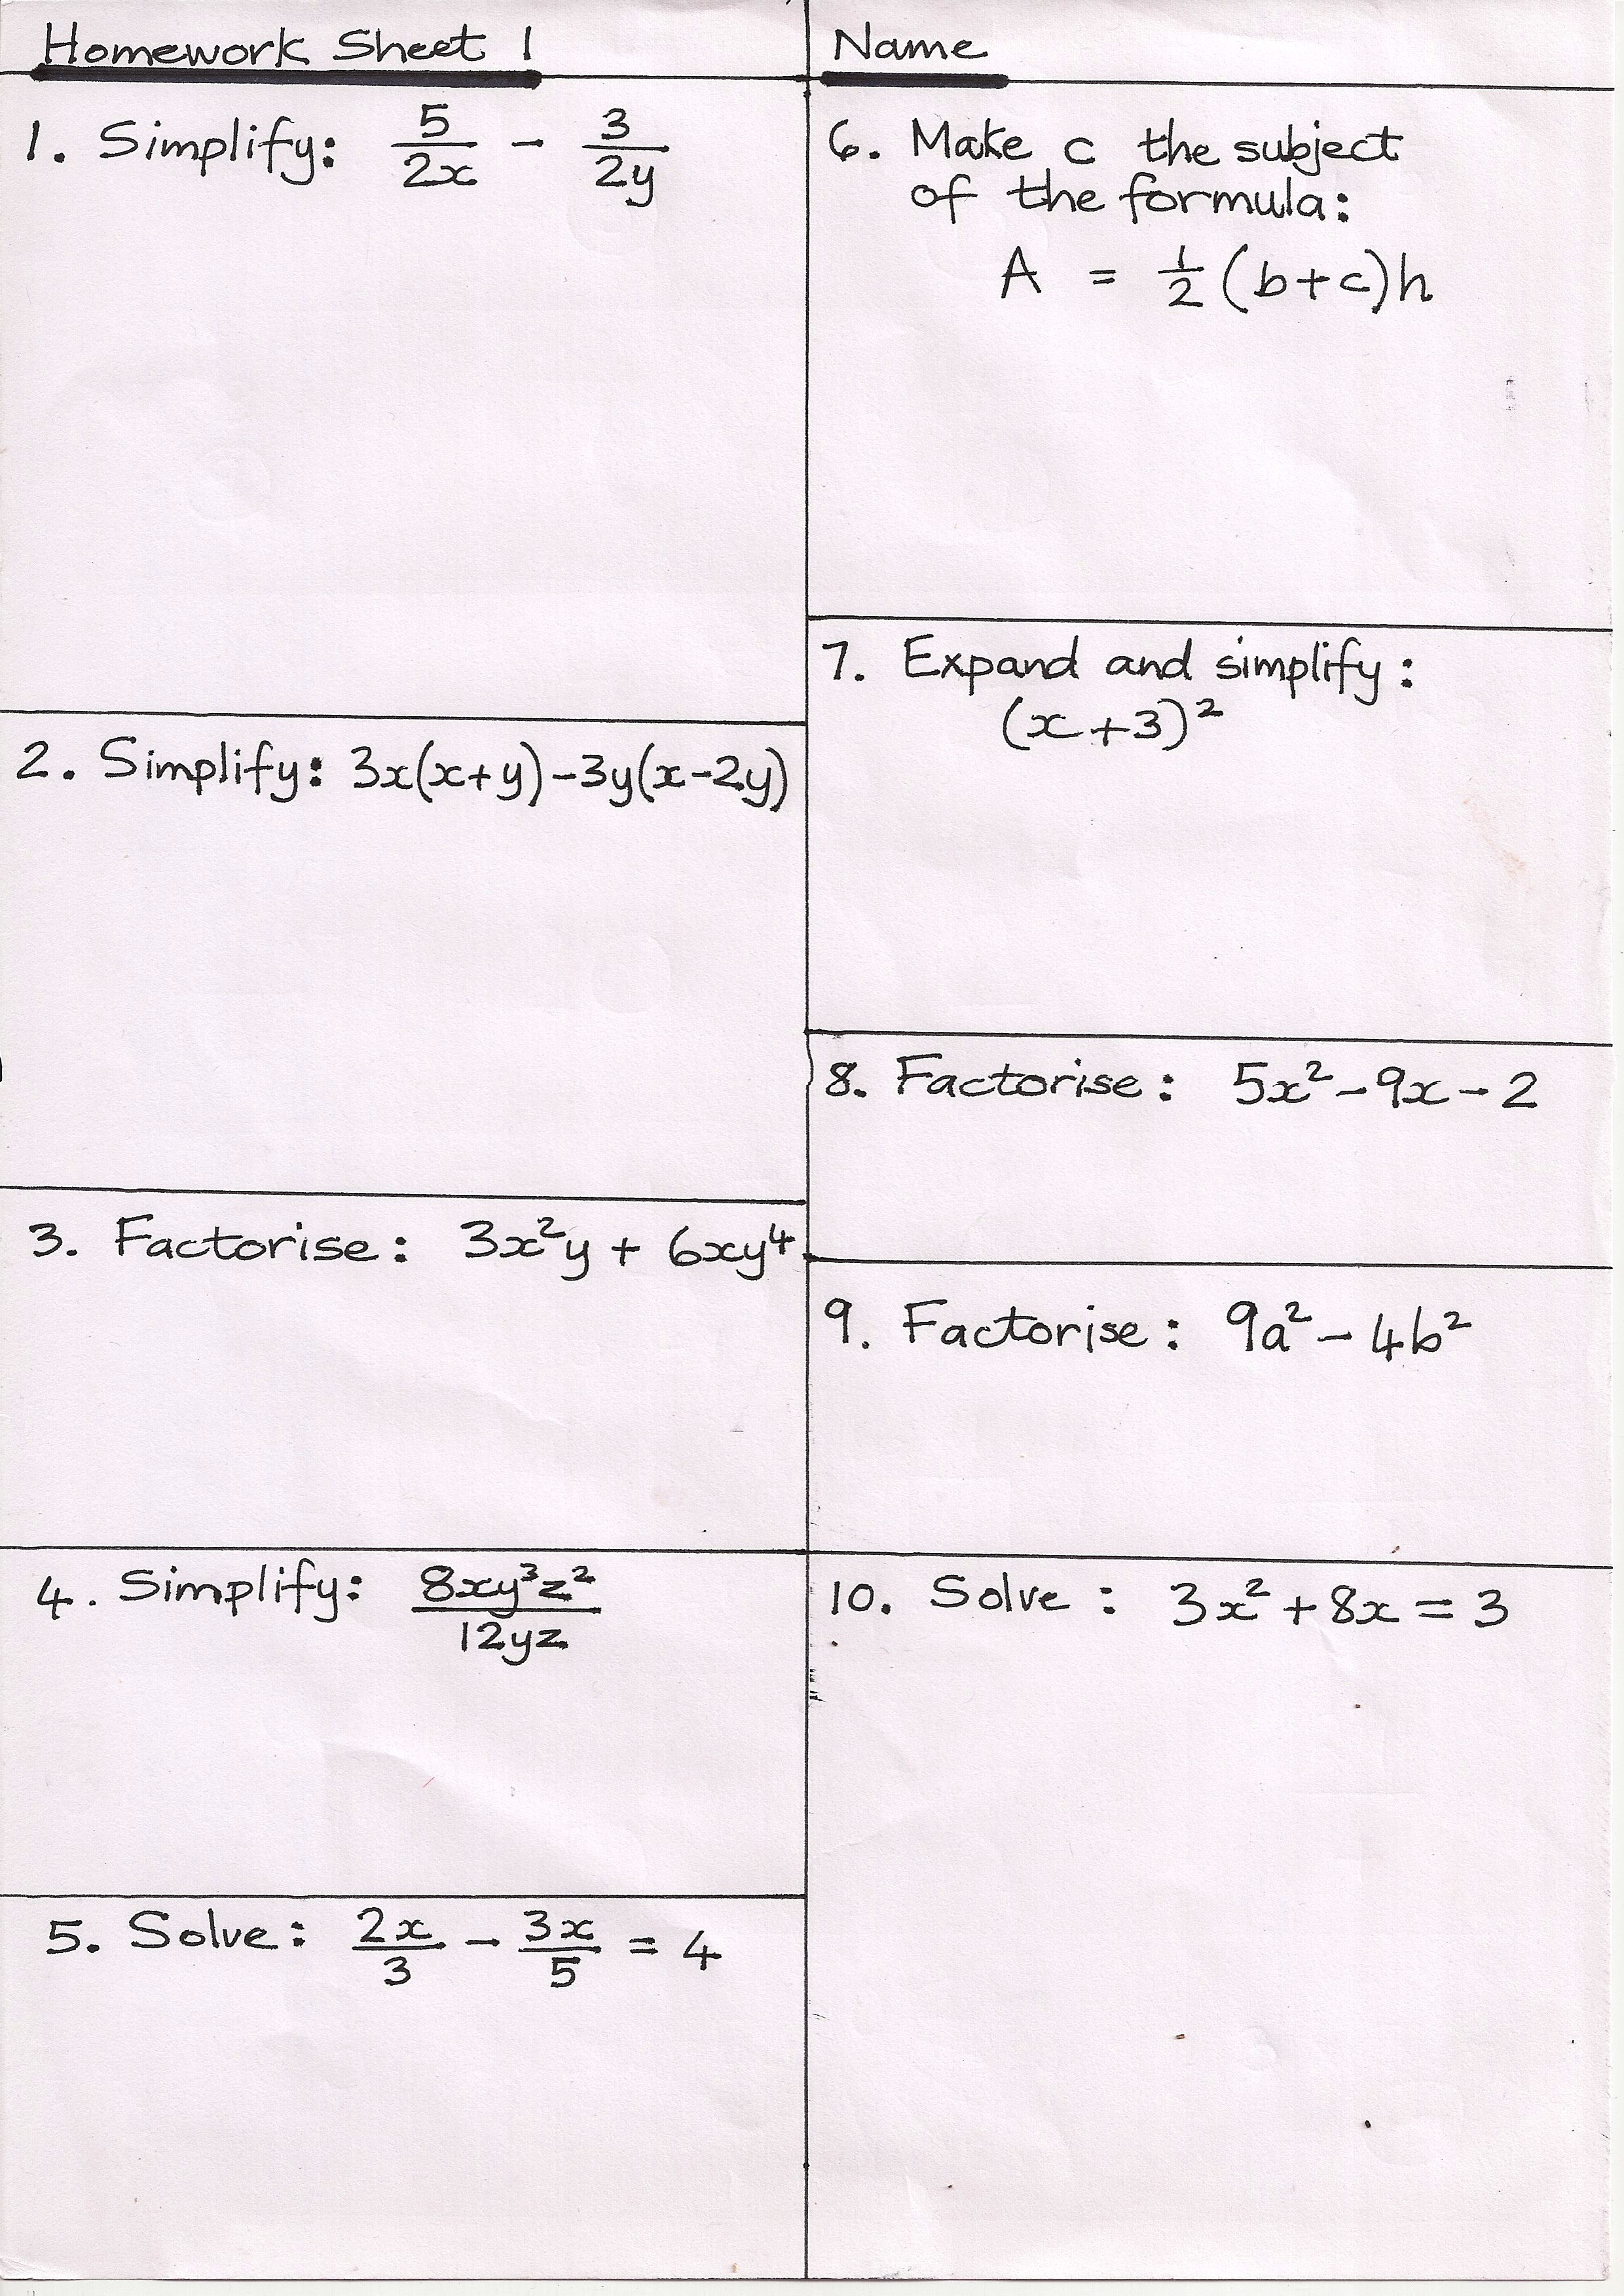 Two tier gcse maths homework pack 2